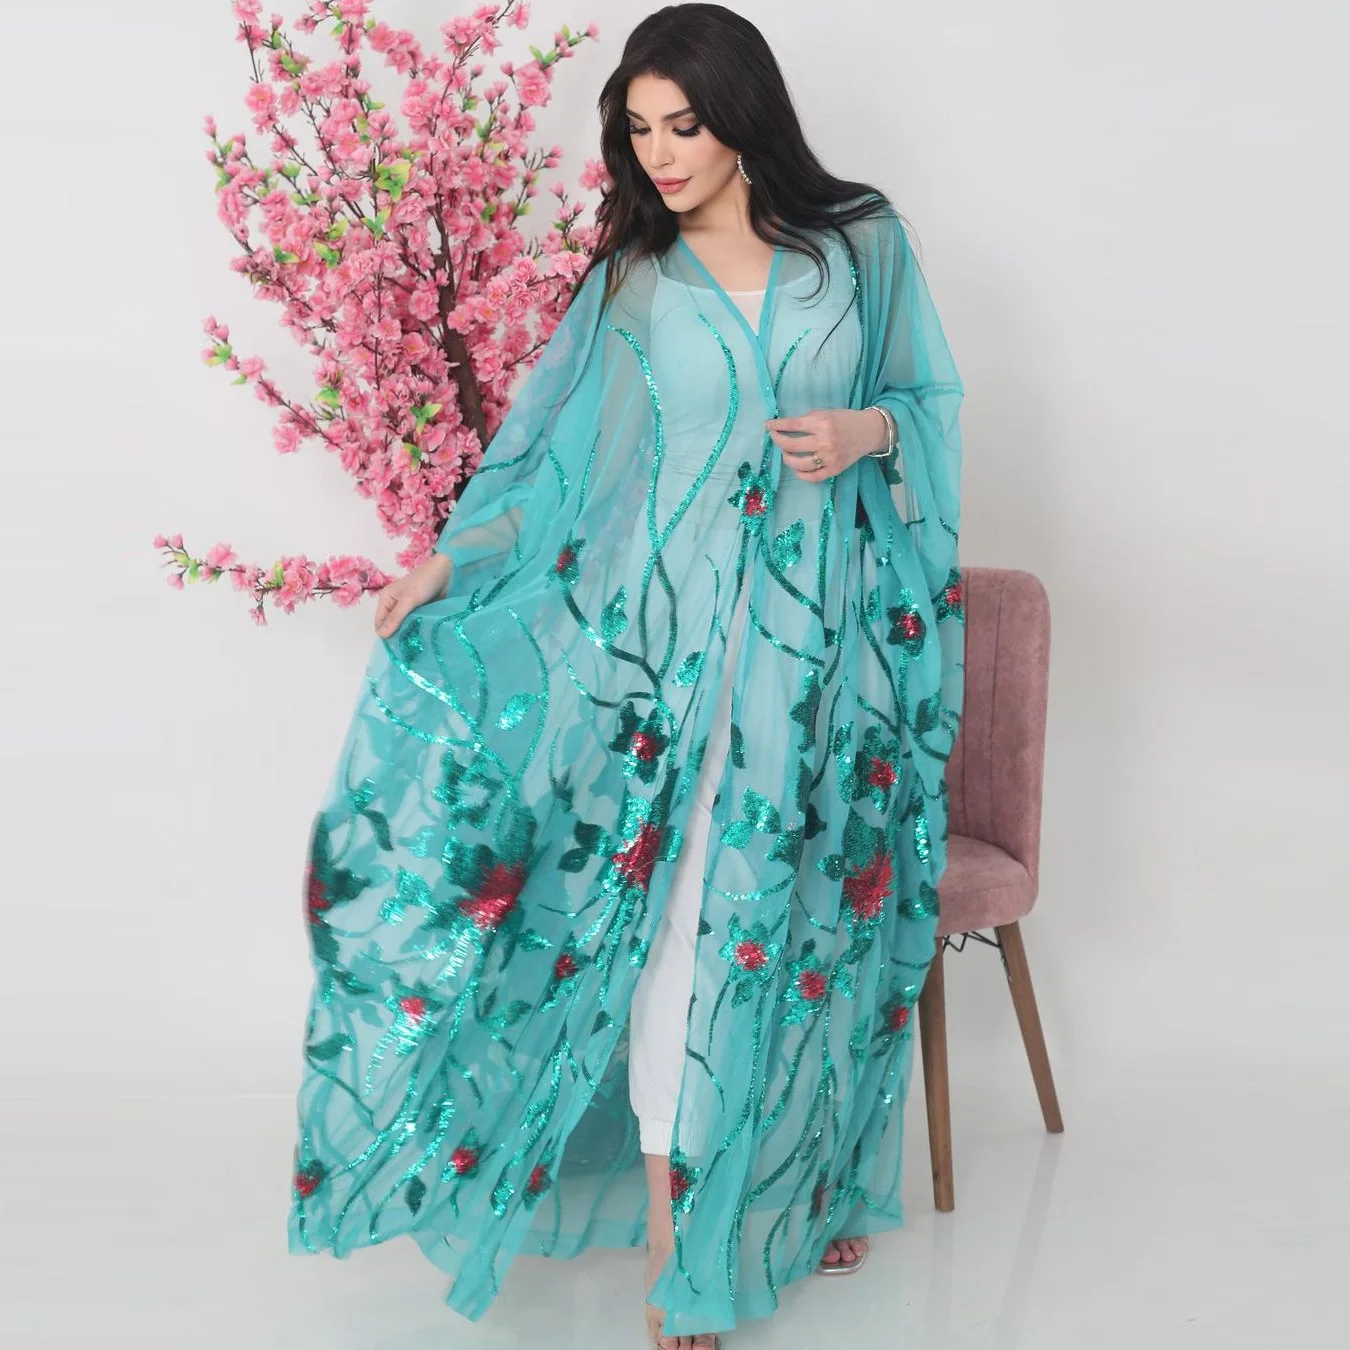 New Muslim Women Abaya Kimono Jalabiya Dress Abayas Dubai Autumn Islamic Clothes Bat Sleeve Sequin Embroidered Fashion Outerwear